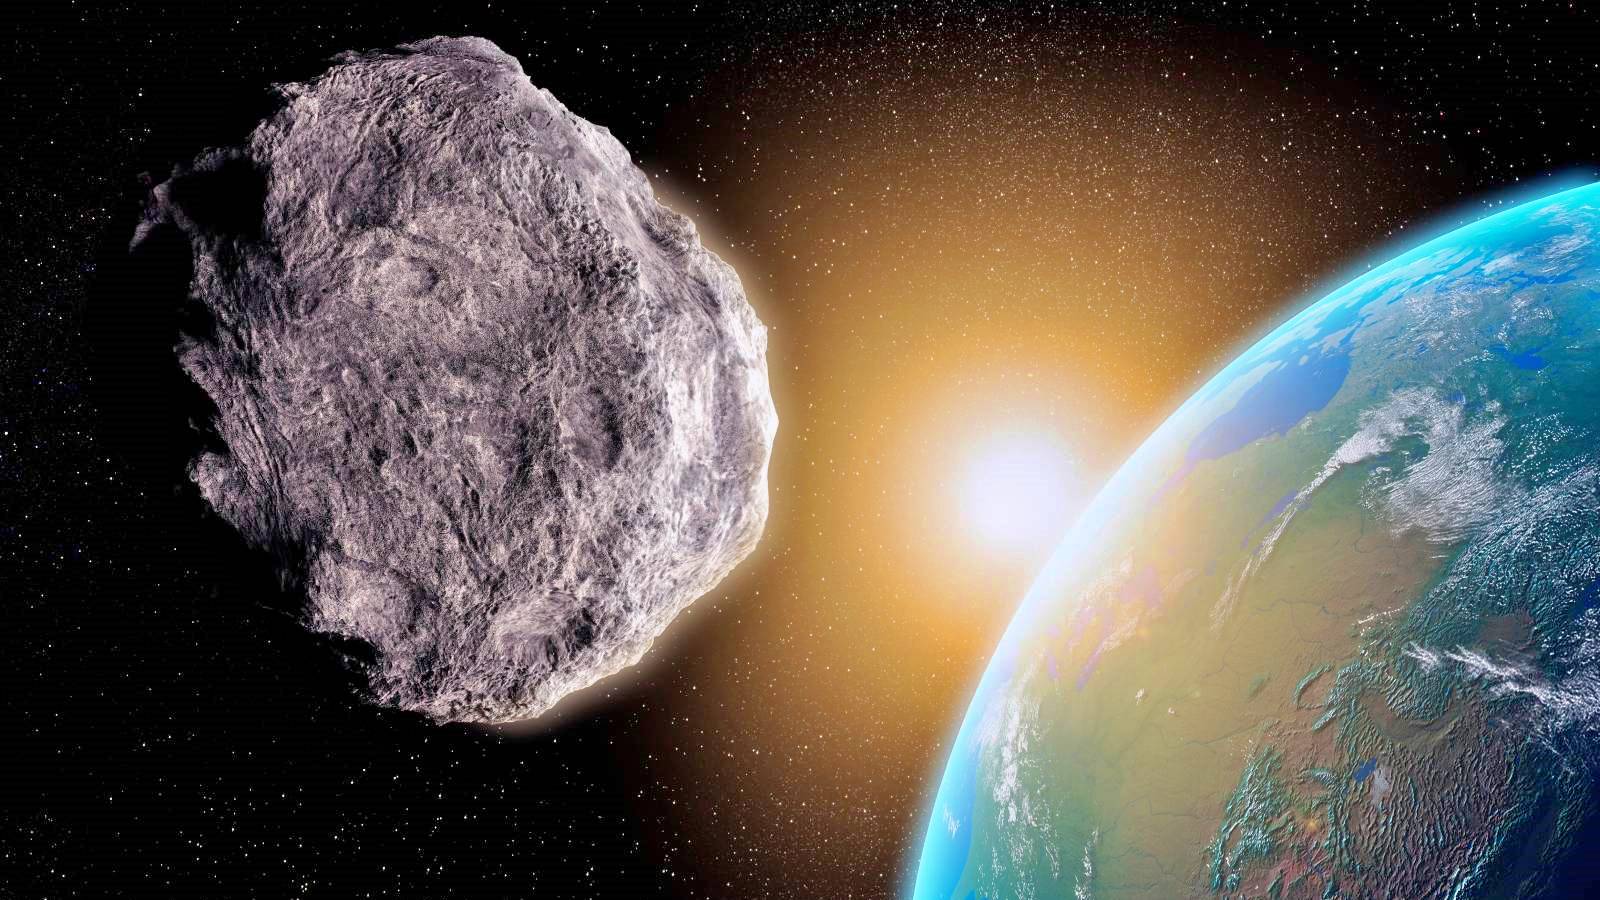 RIESIGER NASA-Asteroid spät in Erdnähe entdeckt